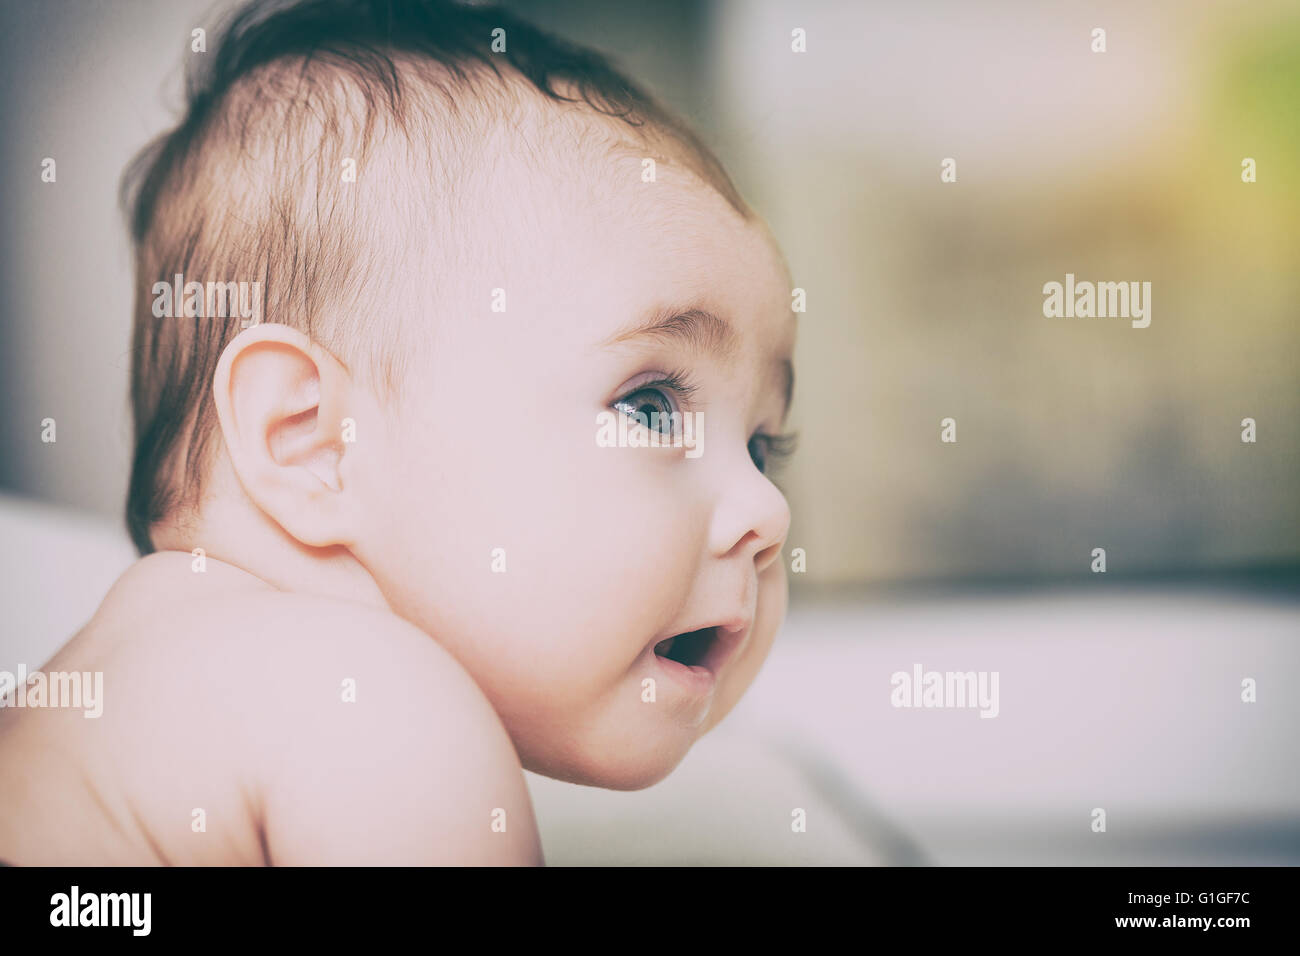 Baby toddler ritratto gioiosa ragazza faccia felice infante - immagine di stock Foto Stock